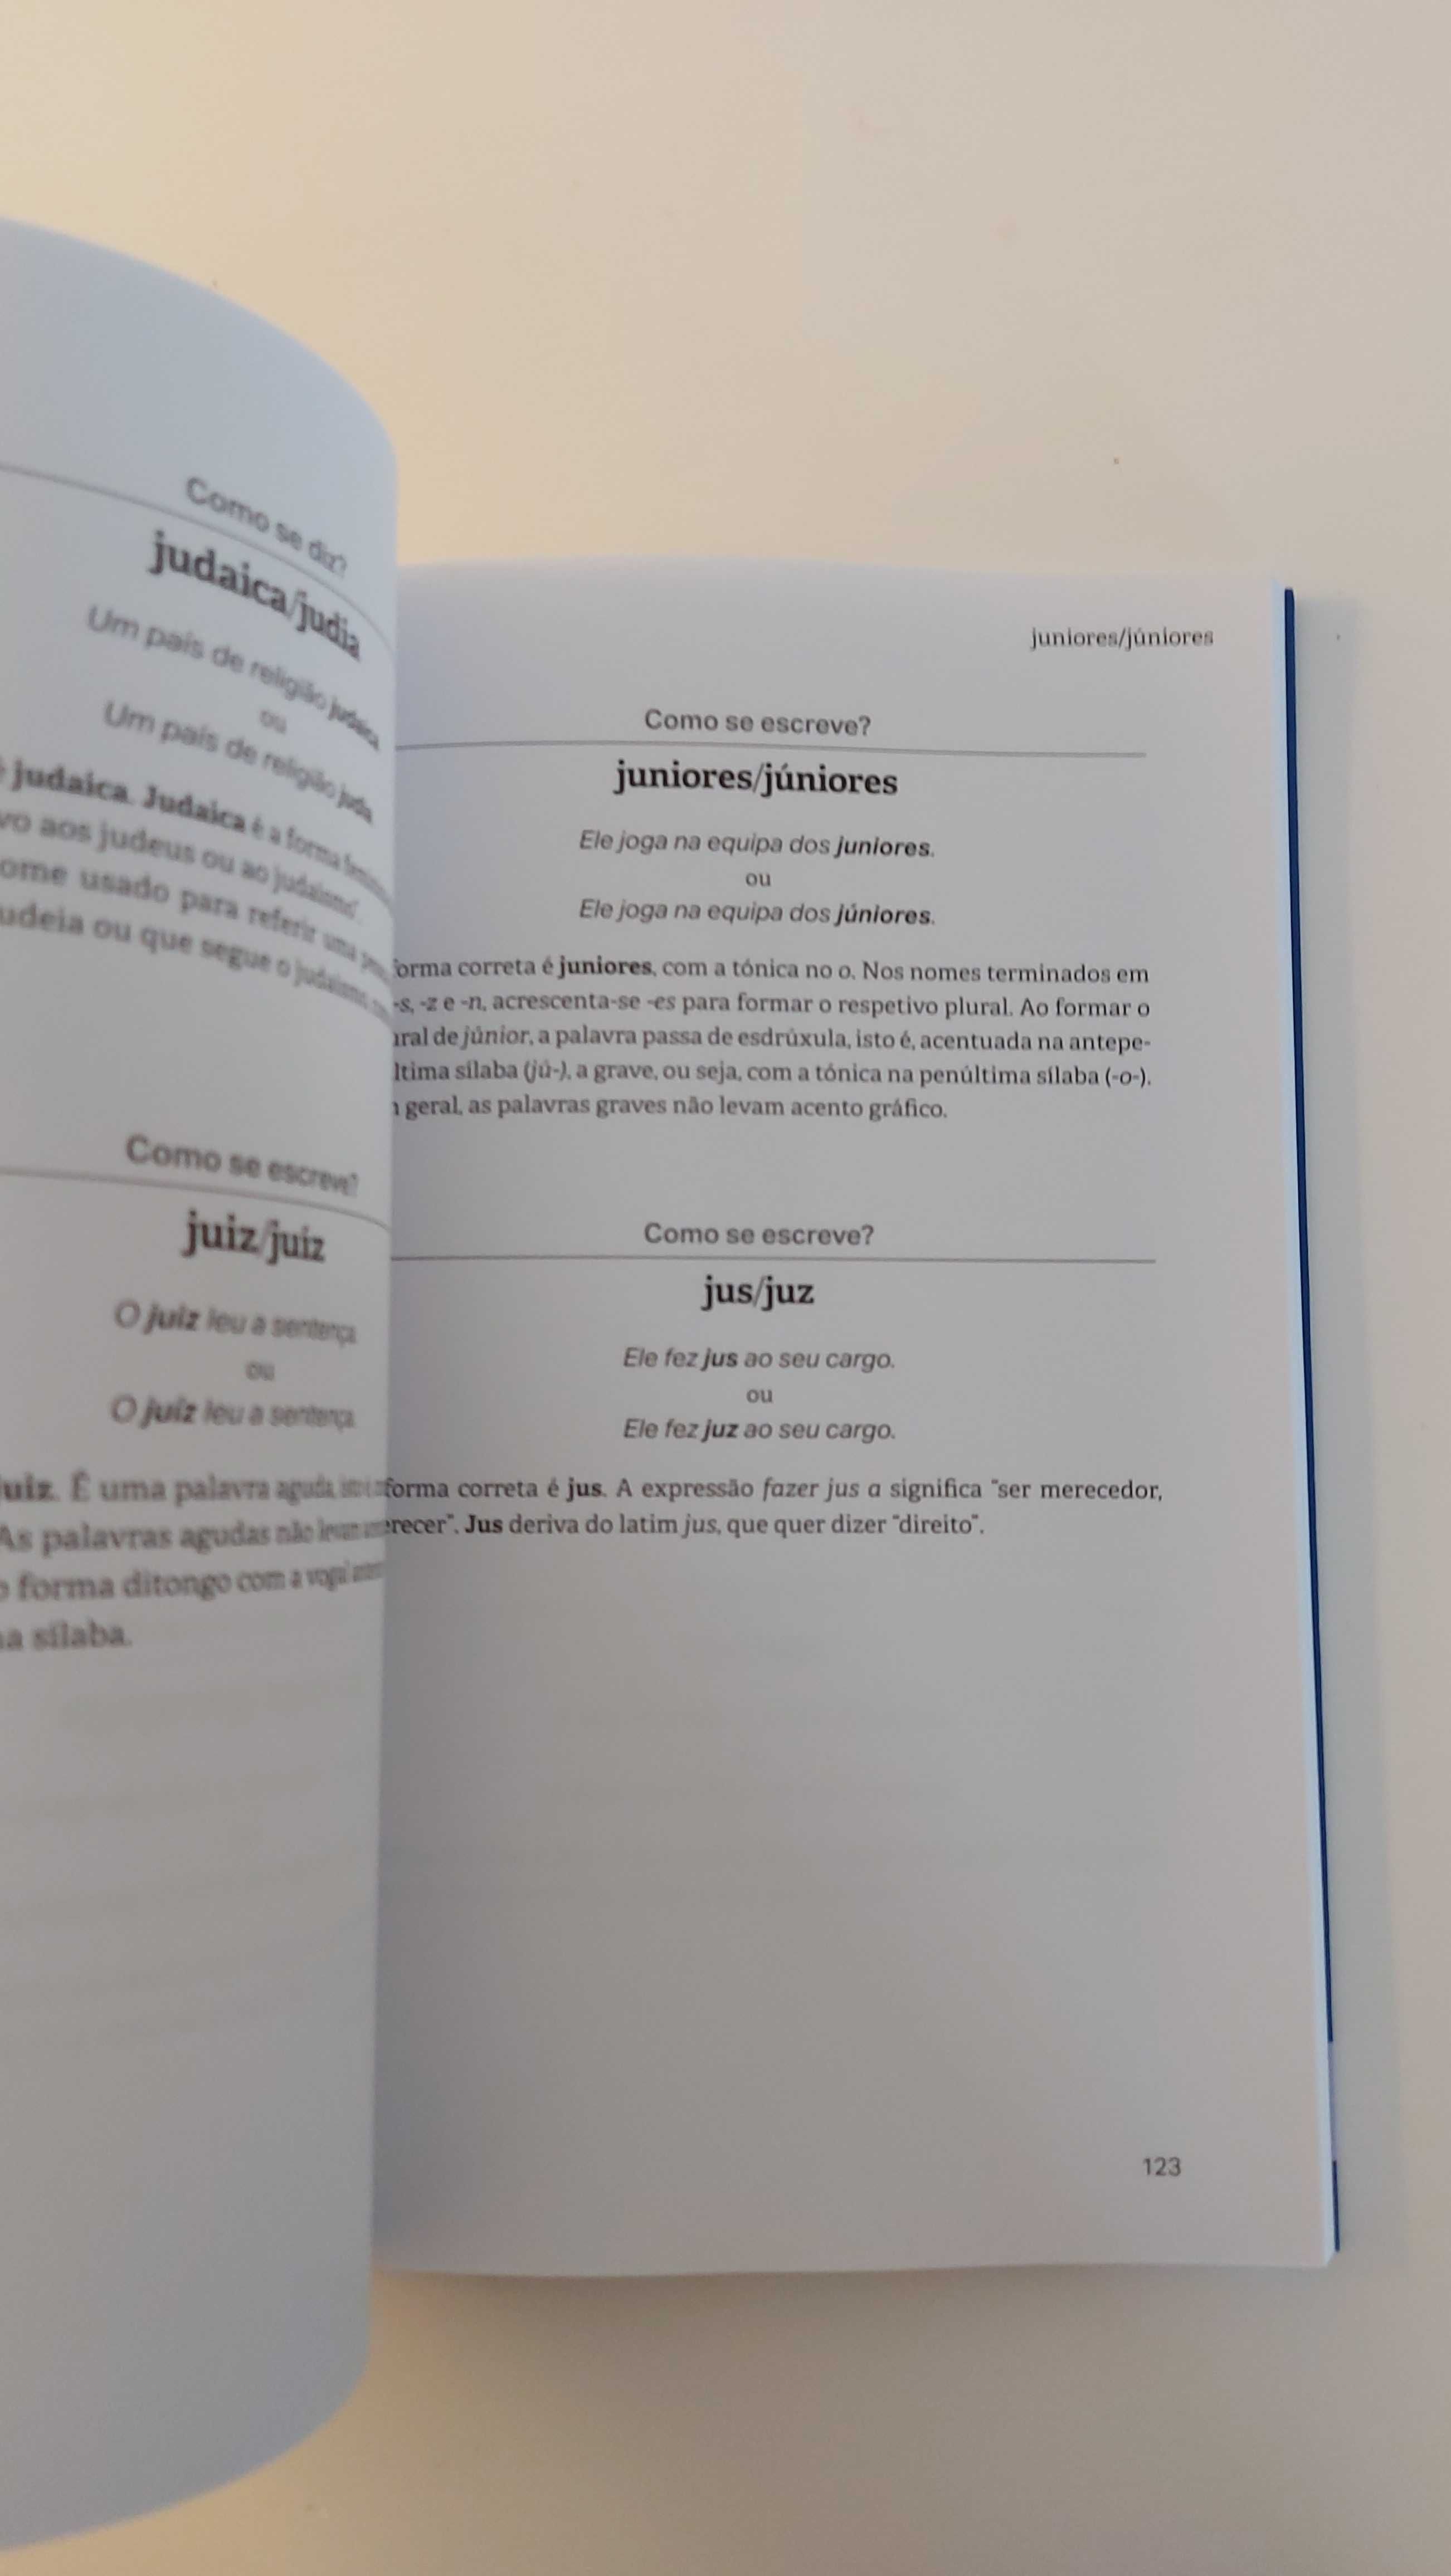 Livro "Bom Português - A resposta certa para cada dúvida" da RTP